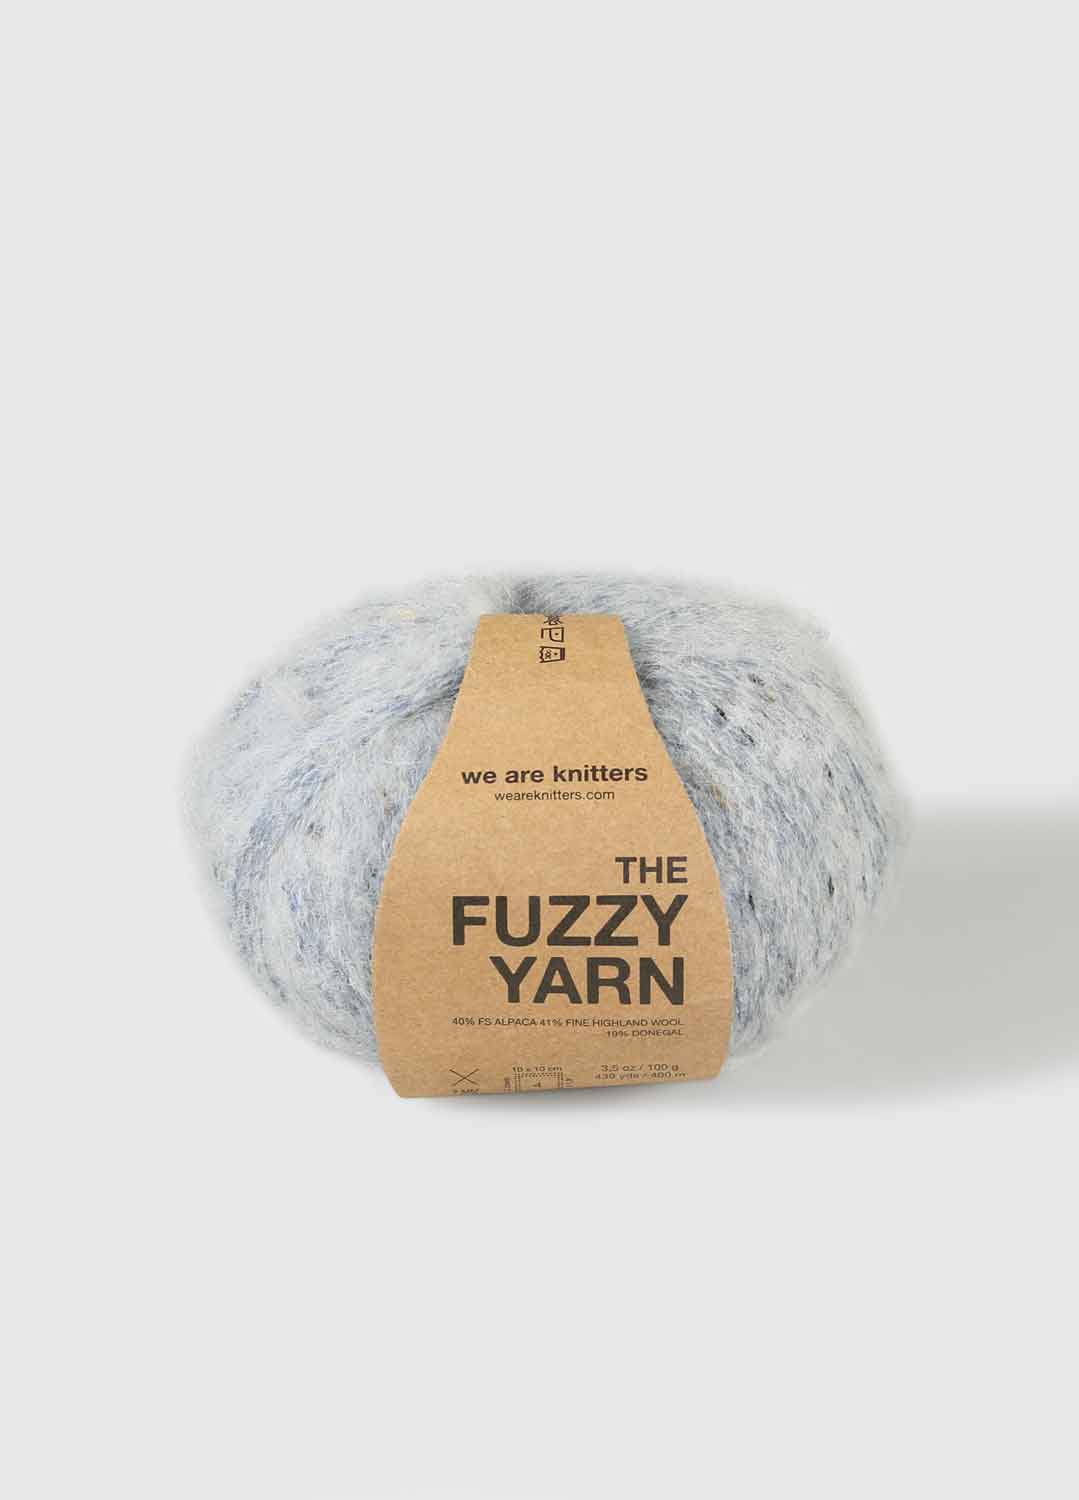 The Fuzzy Yarn Marbled Lead